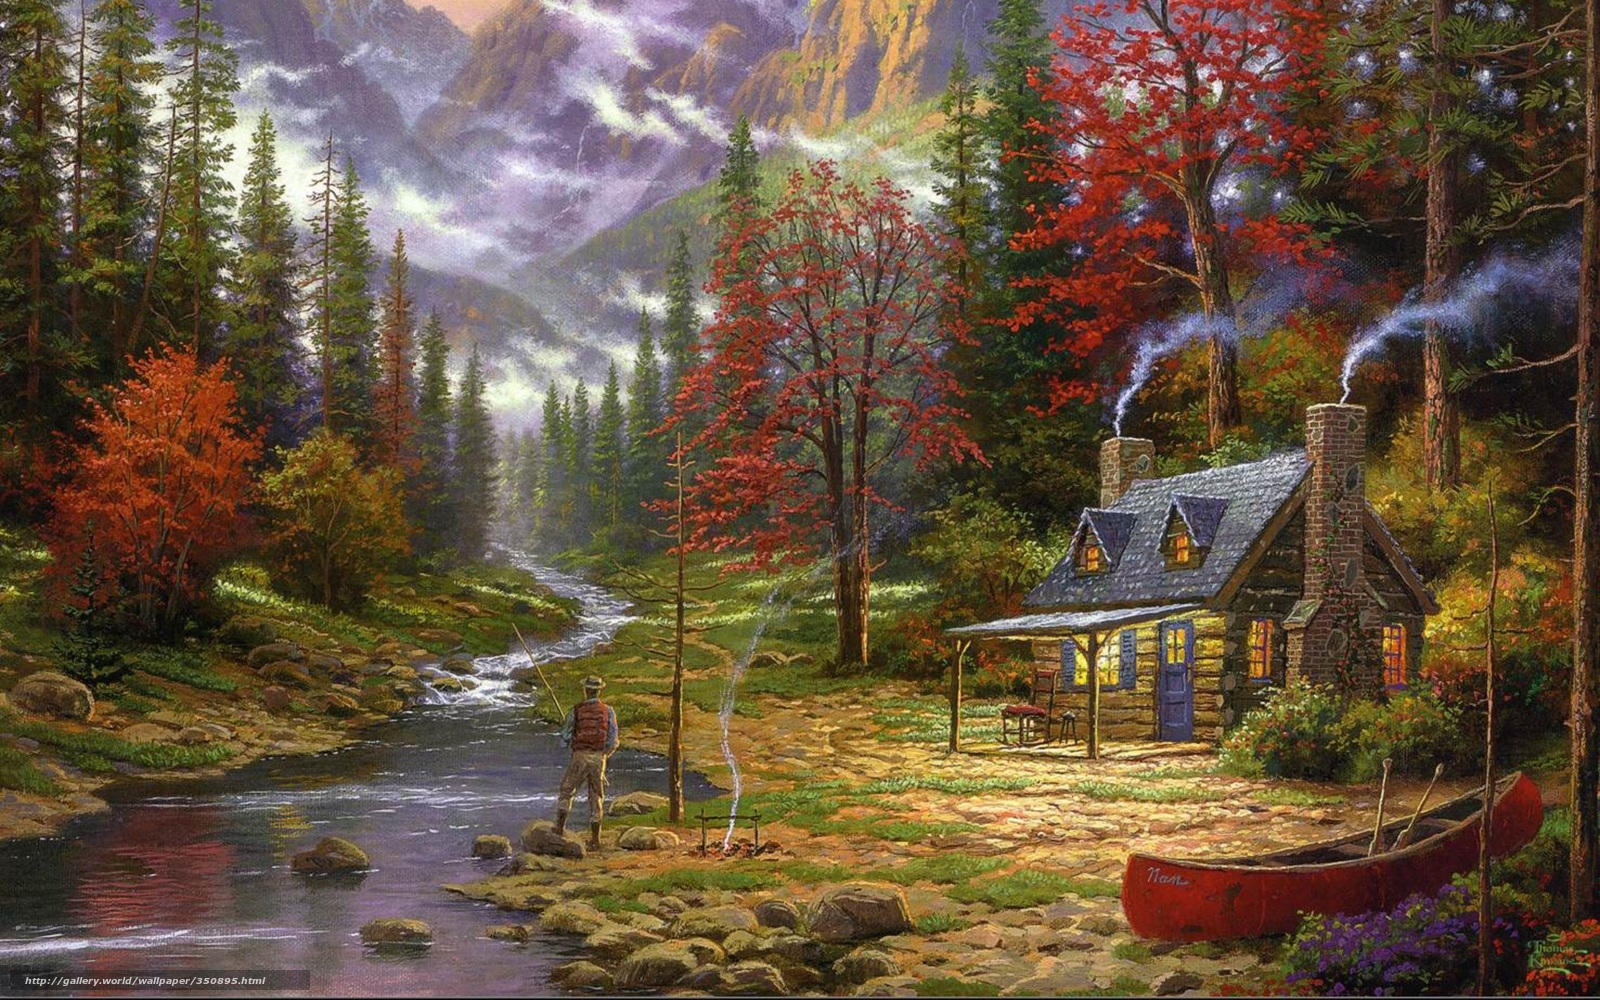 Wallpaper Painting Thomas Kinkade Mountains River Desktop